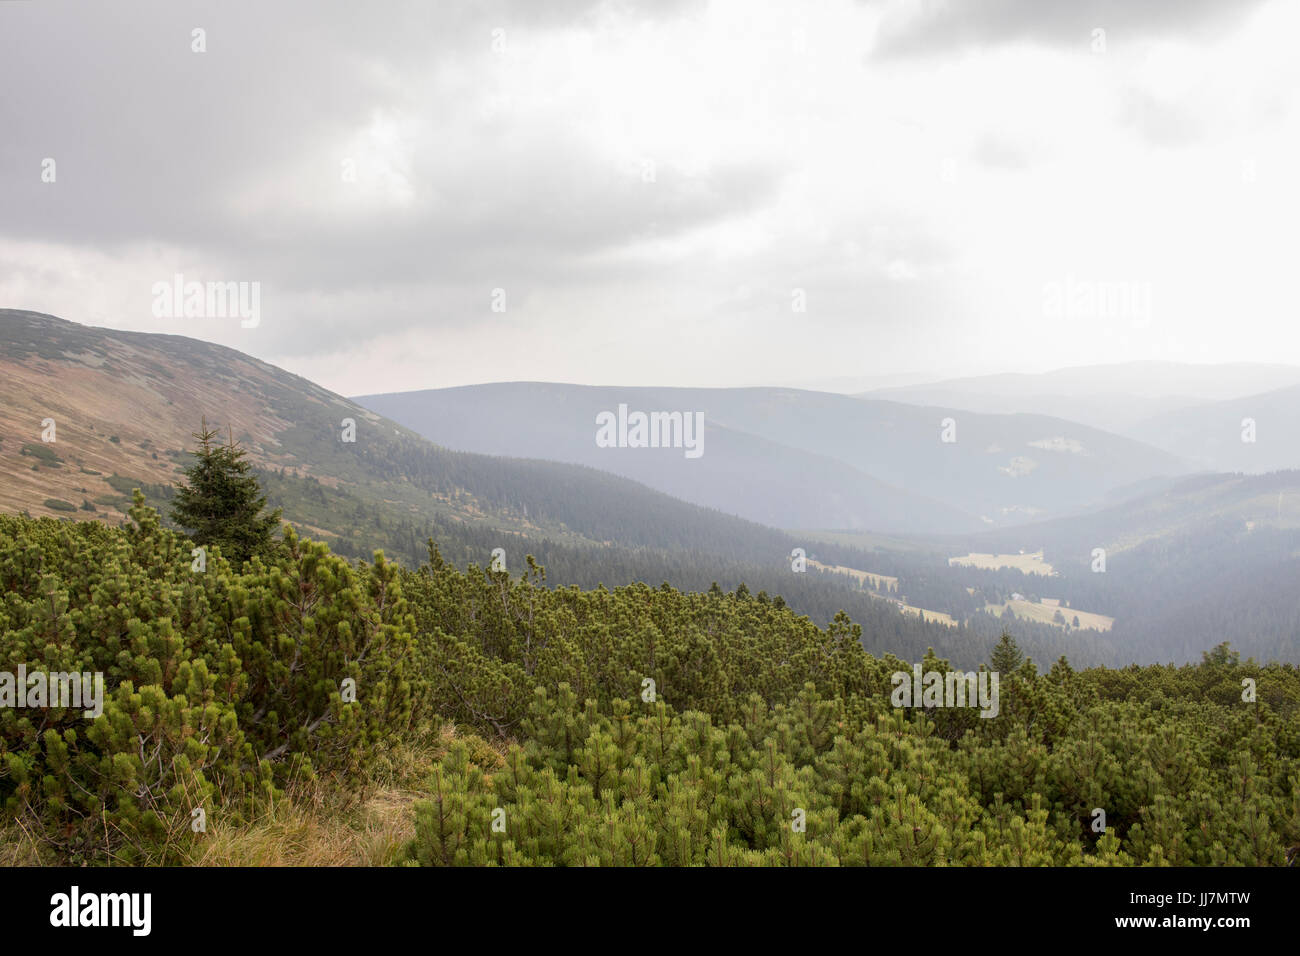 La montagne d'automne de la campagne dans des conditions de ciel couvert avec pins de montagne à l'avant Banque D'Images